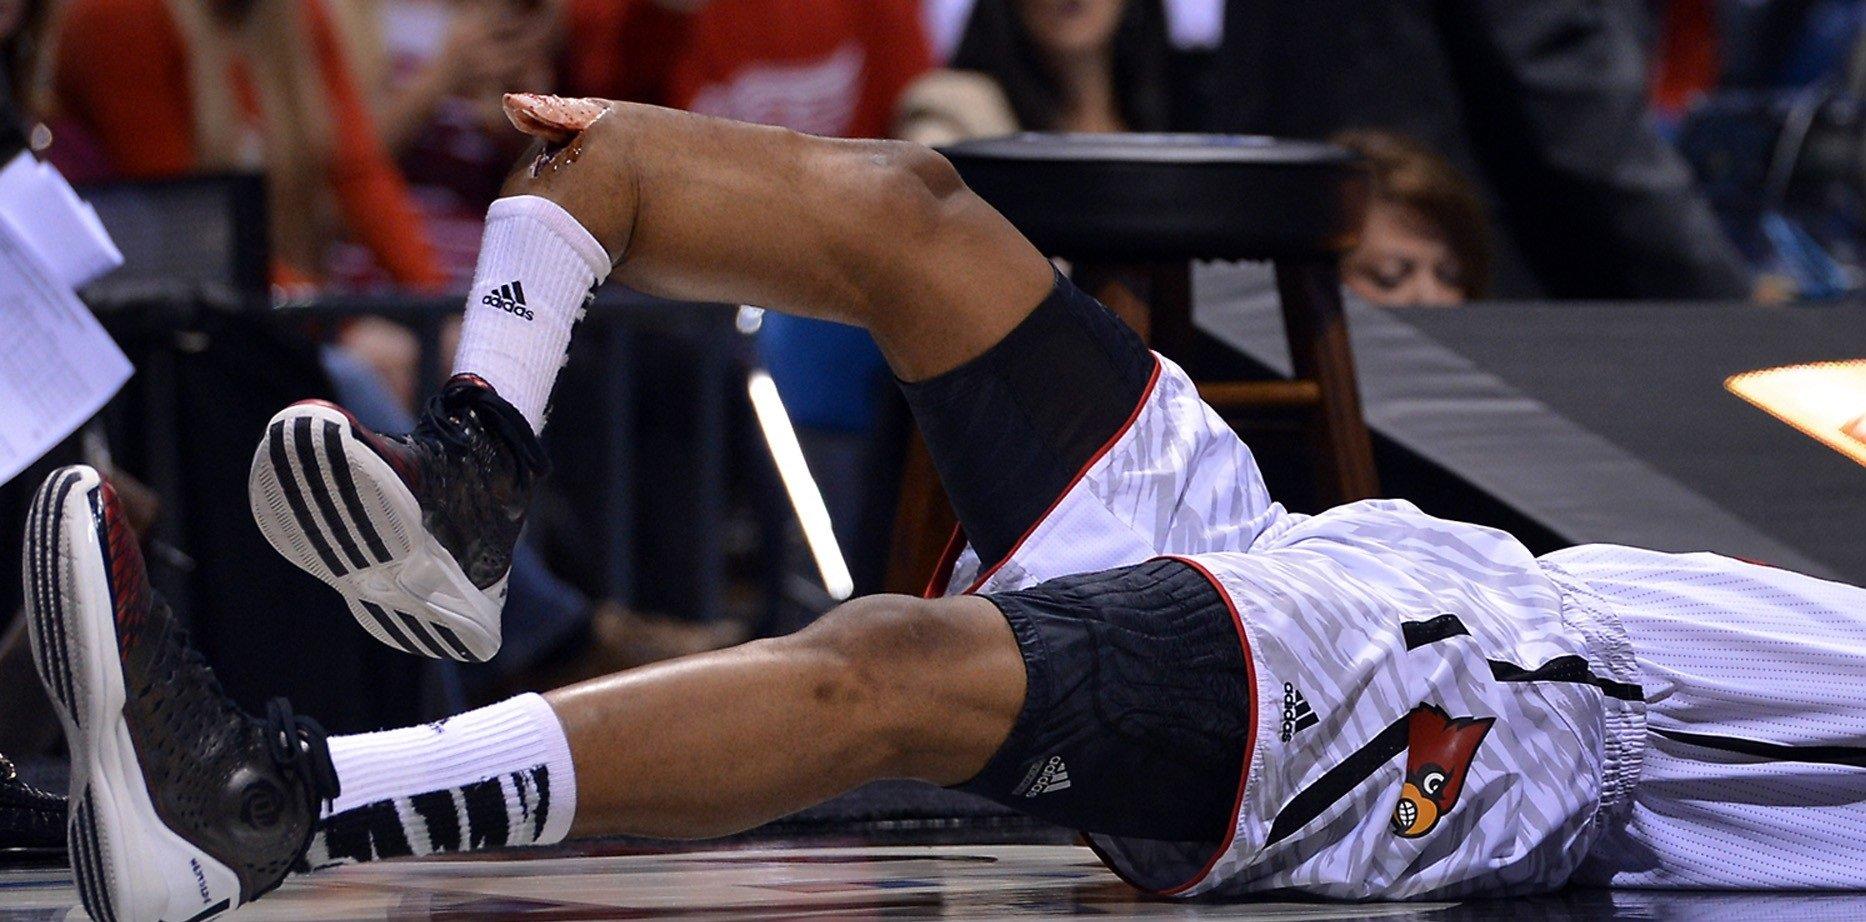 Открытый перелом кости руки. Кевин Уэйр перелом ноги. Пол Джордж баскетболист травма.